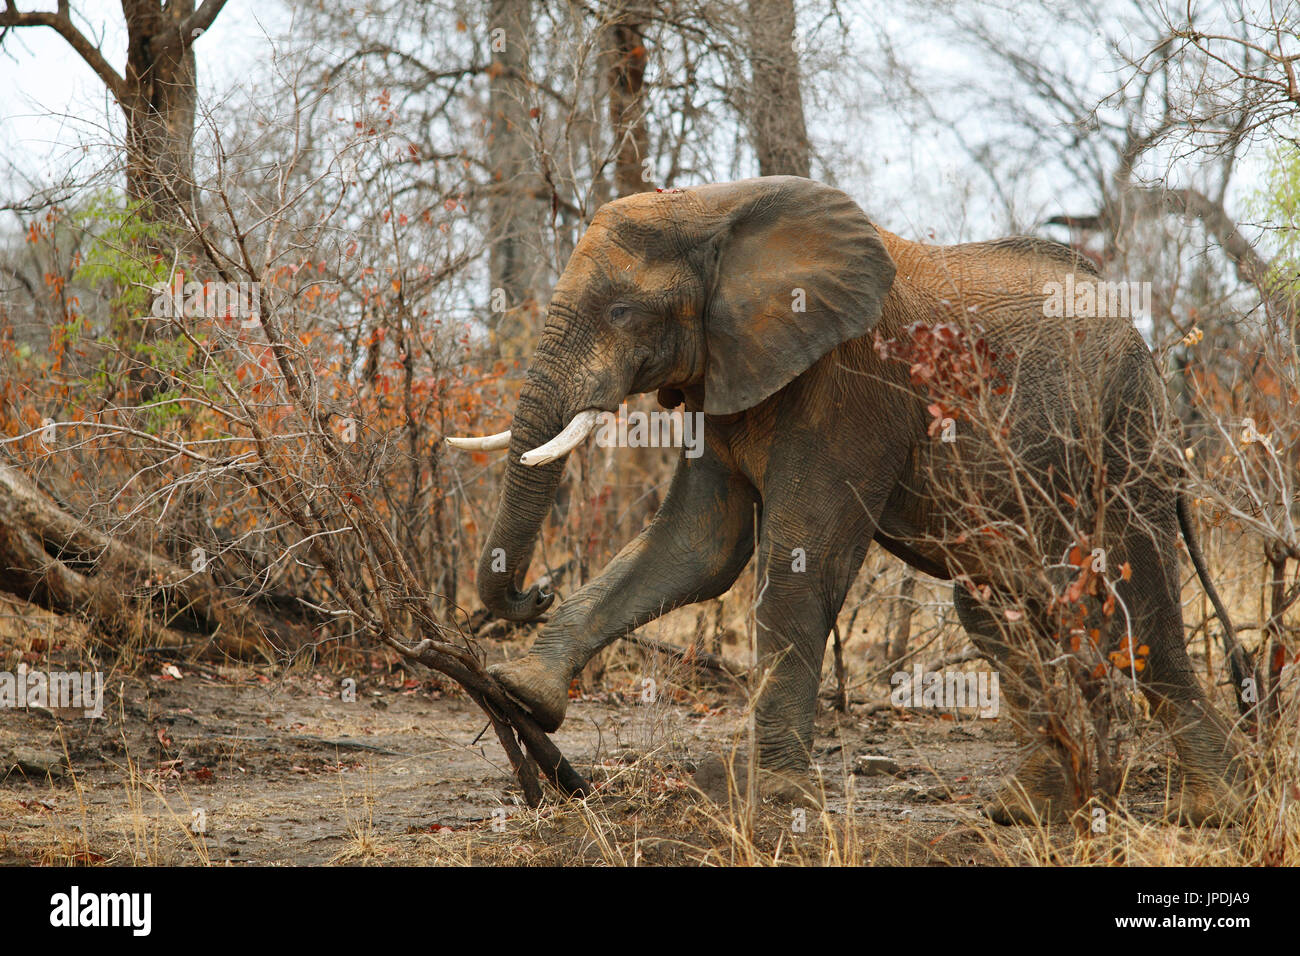 Bush elefante africano (Loxodonta africana), el forrajeo, el Parque Nacional de Kafue, Zambia Foto de stock